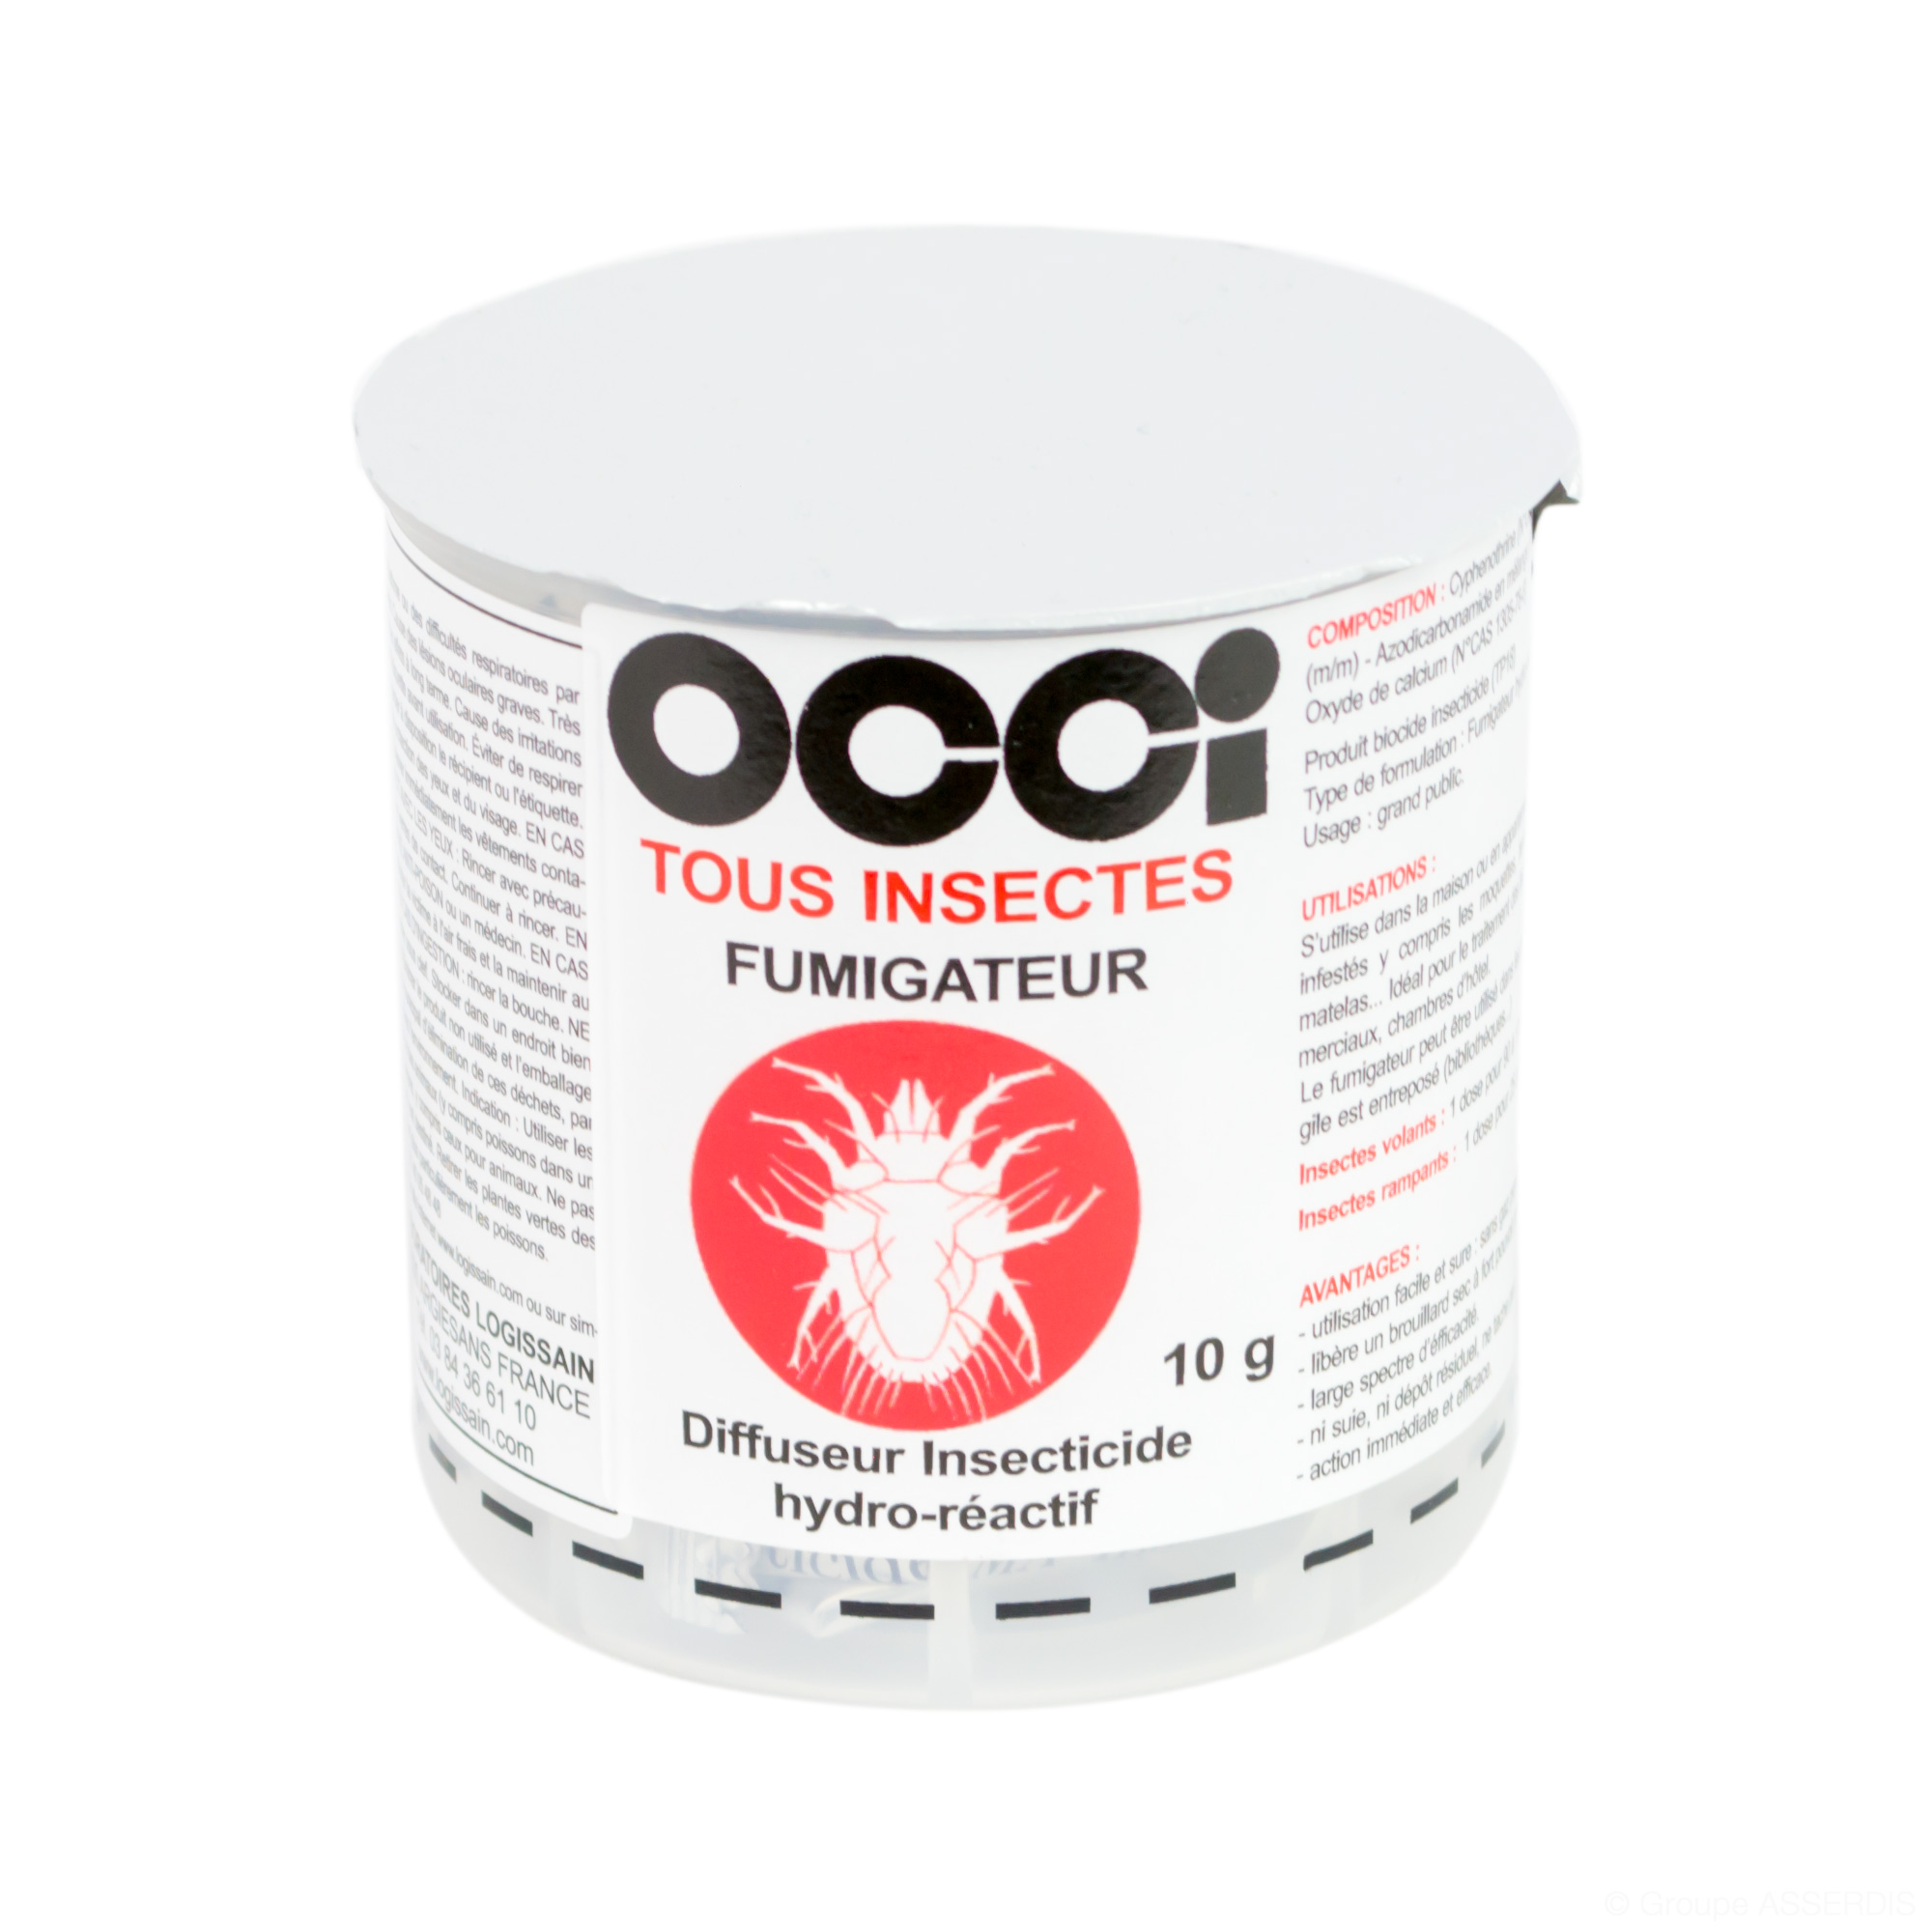 OCCI TOUS INSECTES FUMIGATEUR diffuseur insecticide hydro-réactif -  Logissain